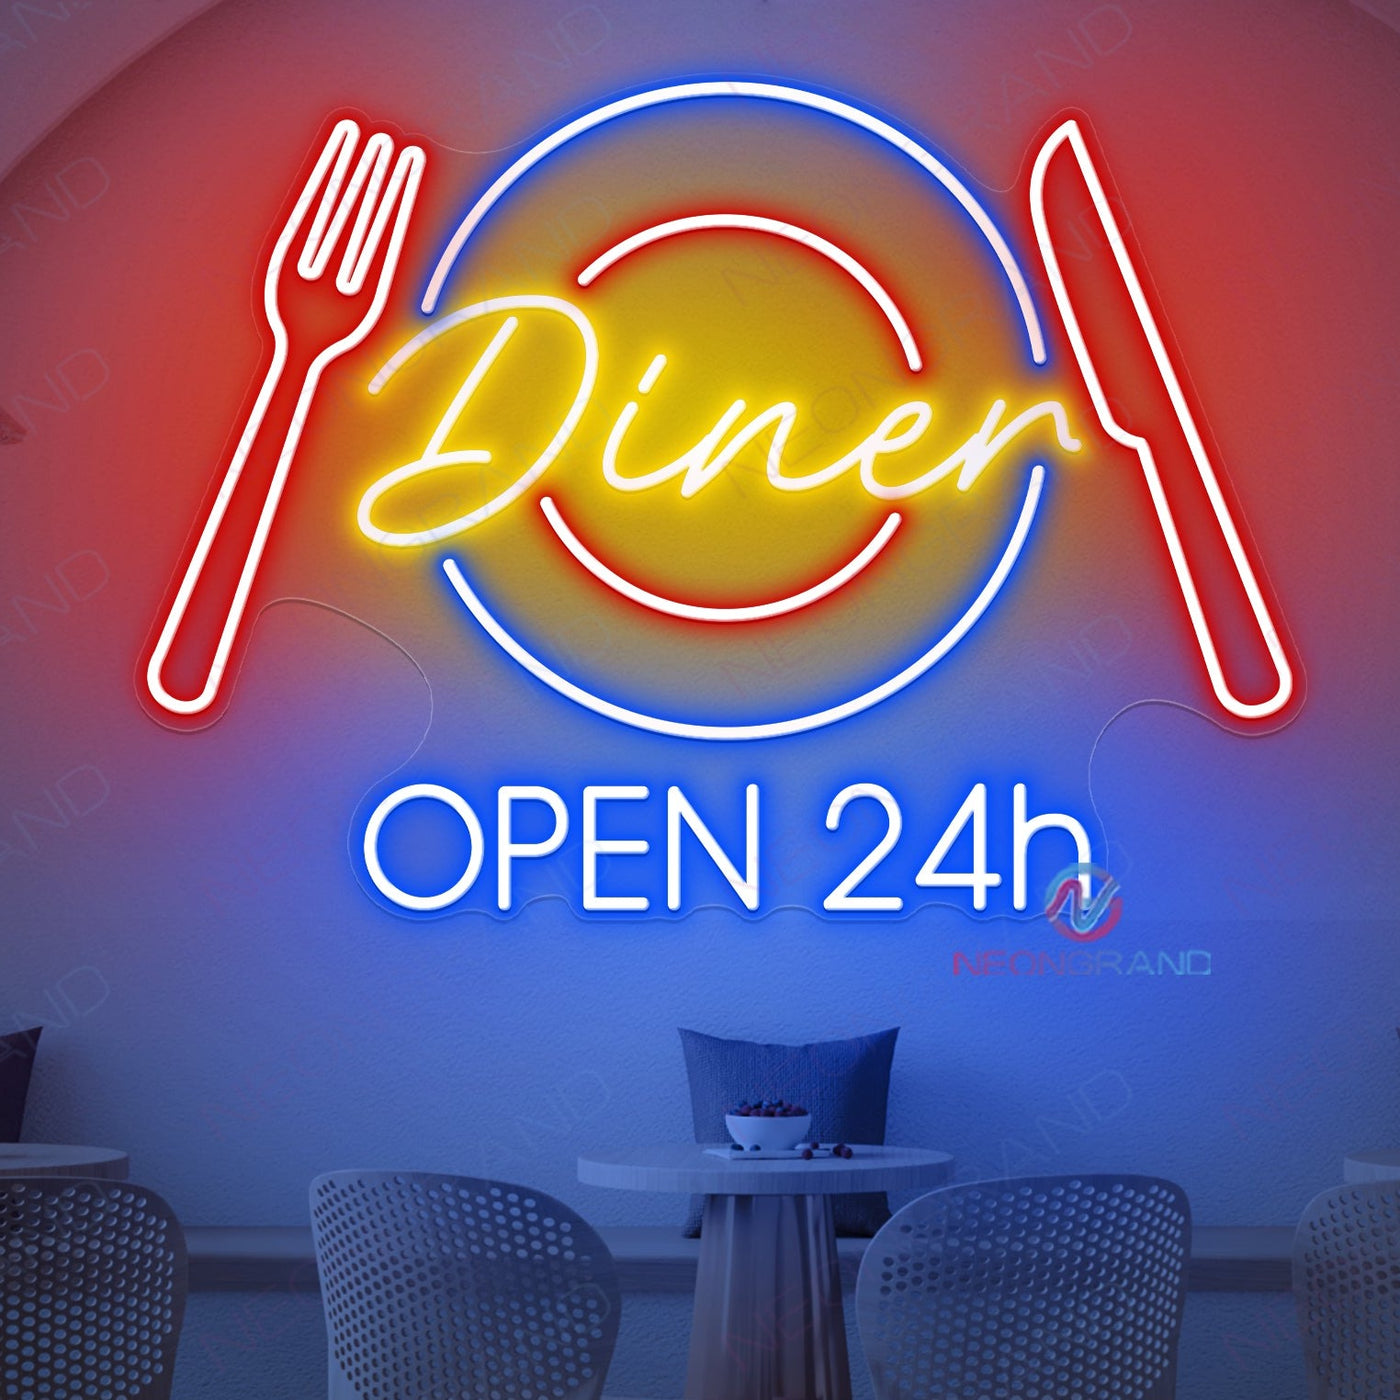 Diner Open 24H Neon Sign Restaurant Led Light